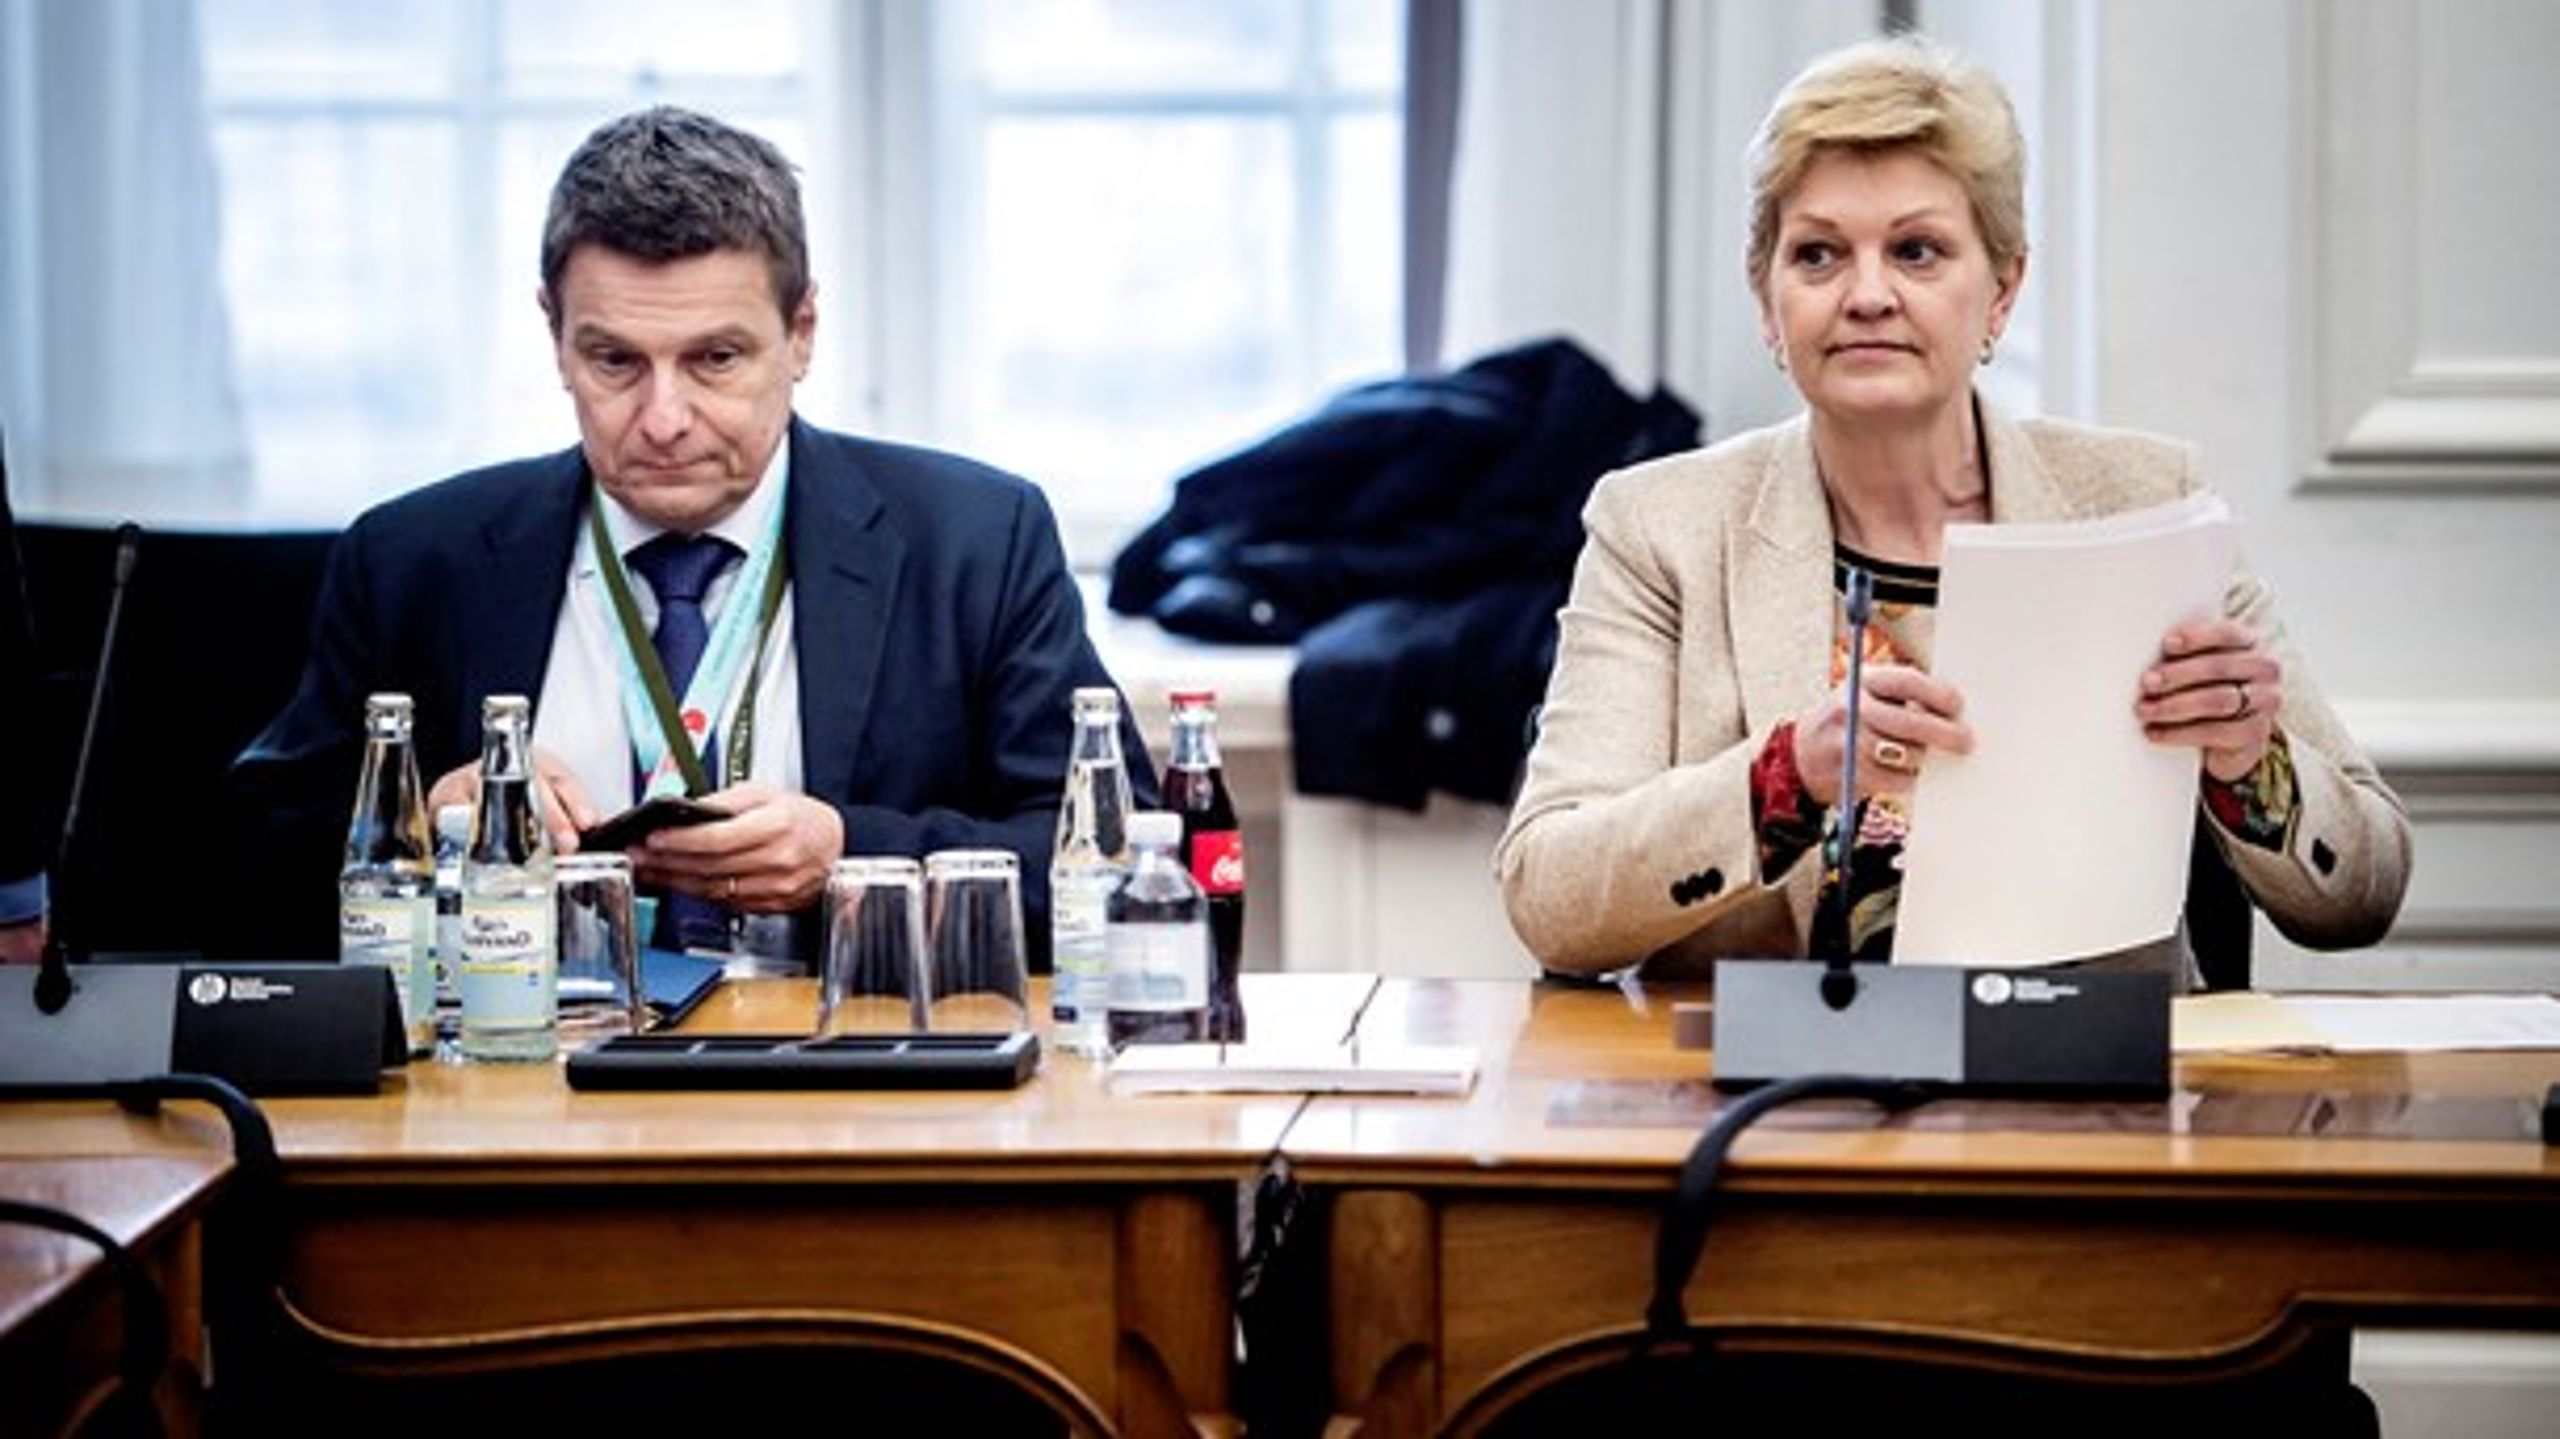 Det er anden næse inden for to måneder til Eva Kjer Hansen som fiskeriminister.